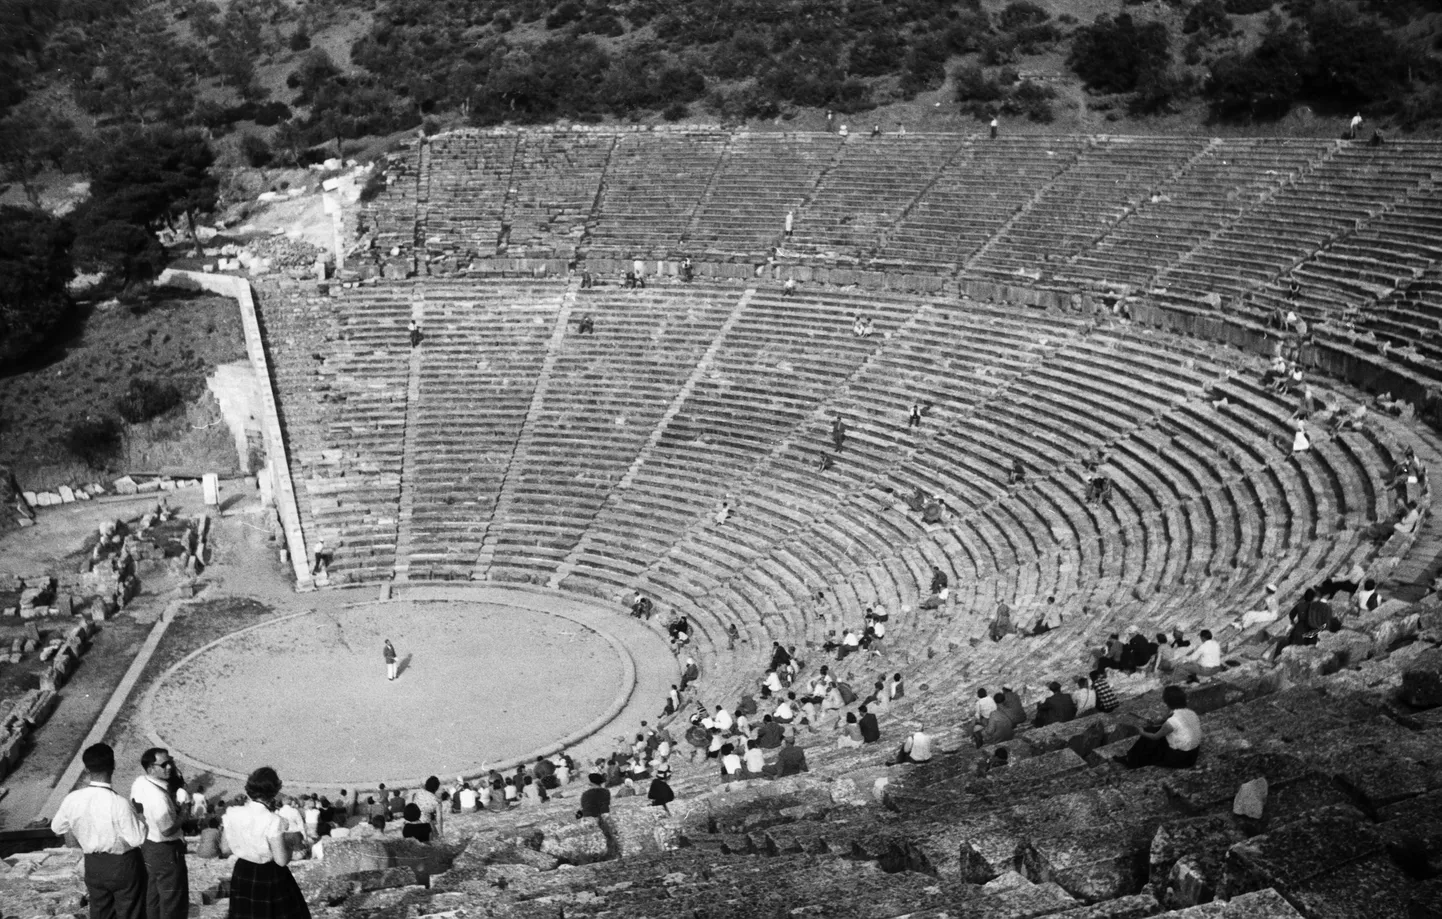 Kreeka, Peloponnesose poolsaar – Epidaurose teater, Asclepiuse pühakoda, vaade orkestrile, 1954. Pilt on illustreeriv.